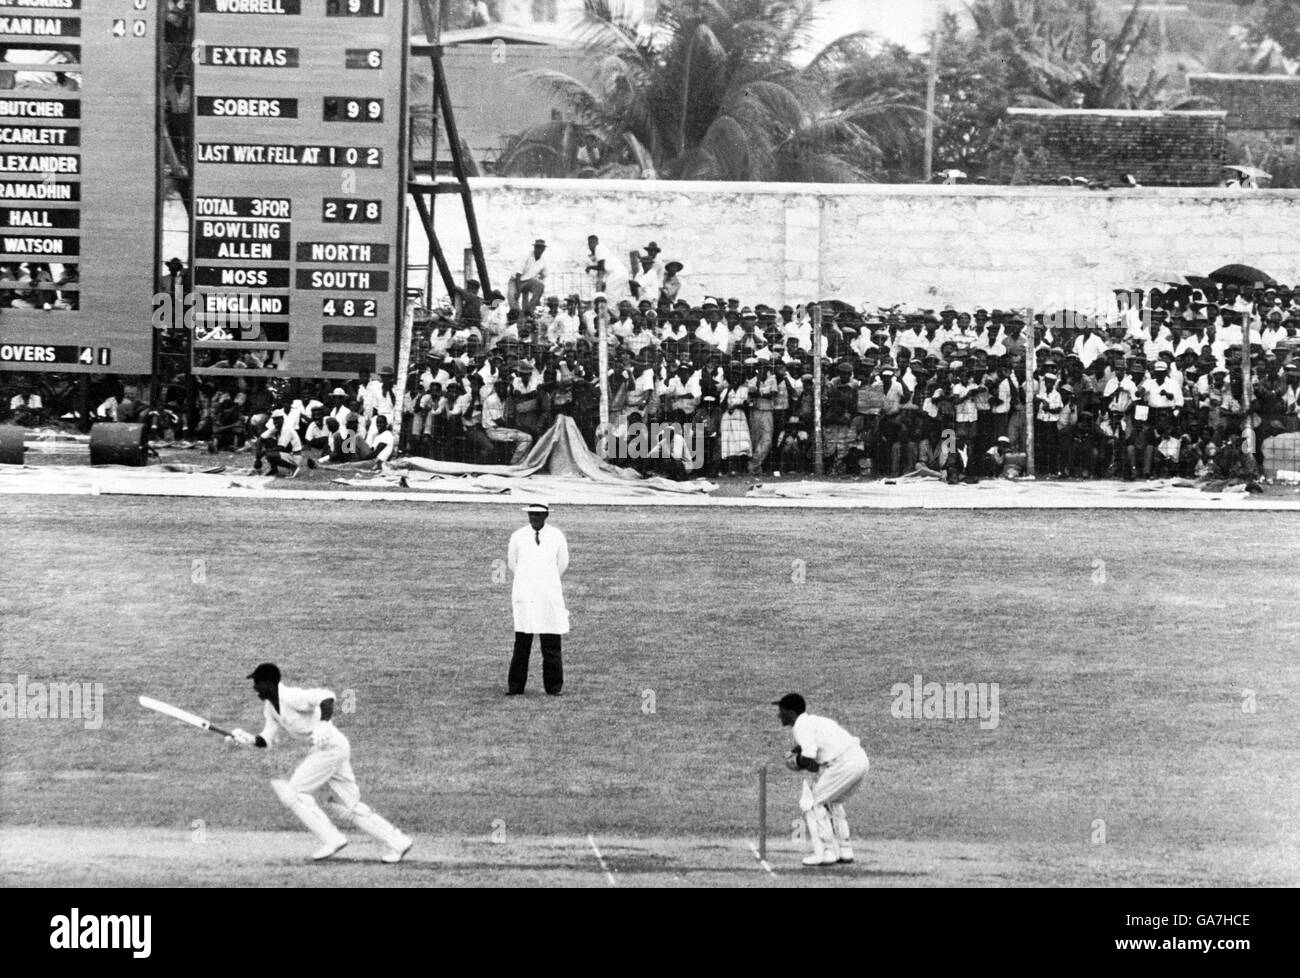 West Indies' Garfield Sobers (l) nimmt eine Single aus der Letzter Ball des Tages, um sein Jahrhundert zu beenden Stockfoto